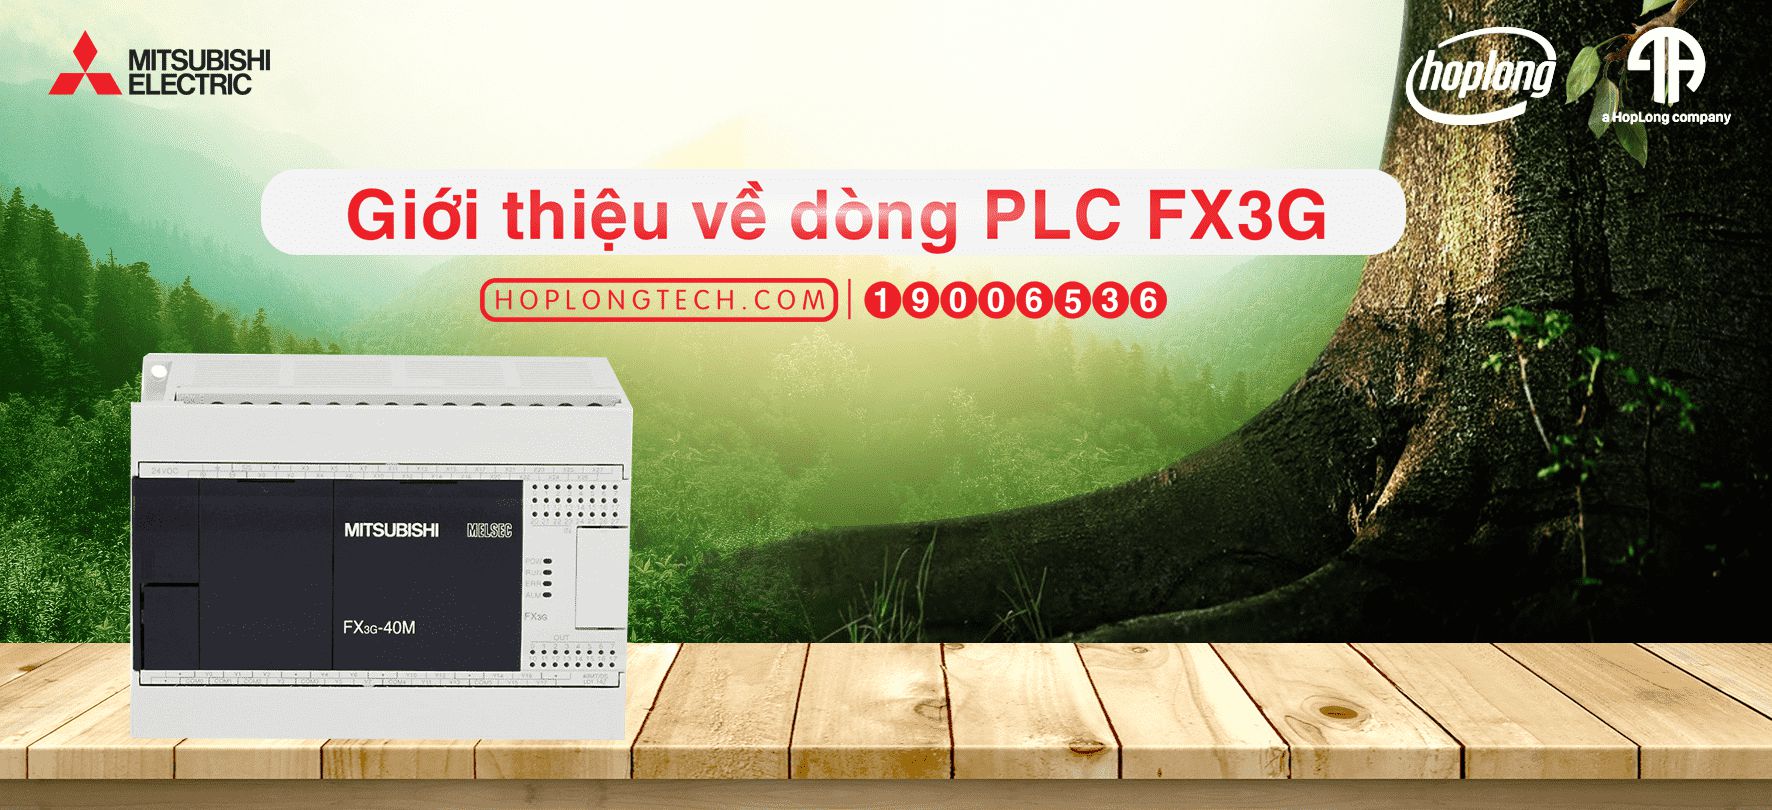 [MITSUBISHI] Giới thiệu về dòng PLC FX3G